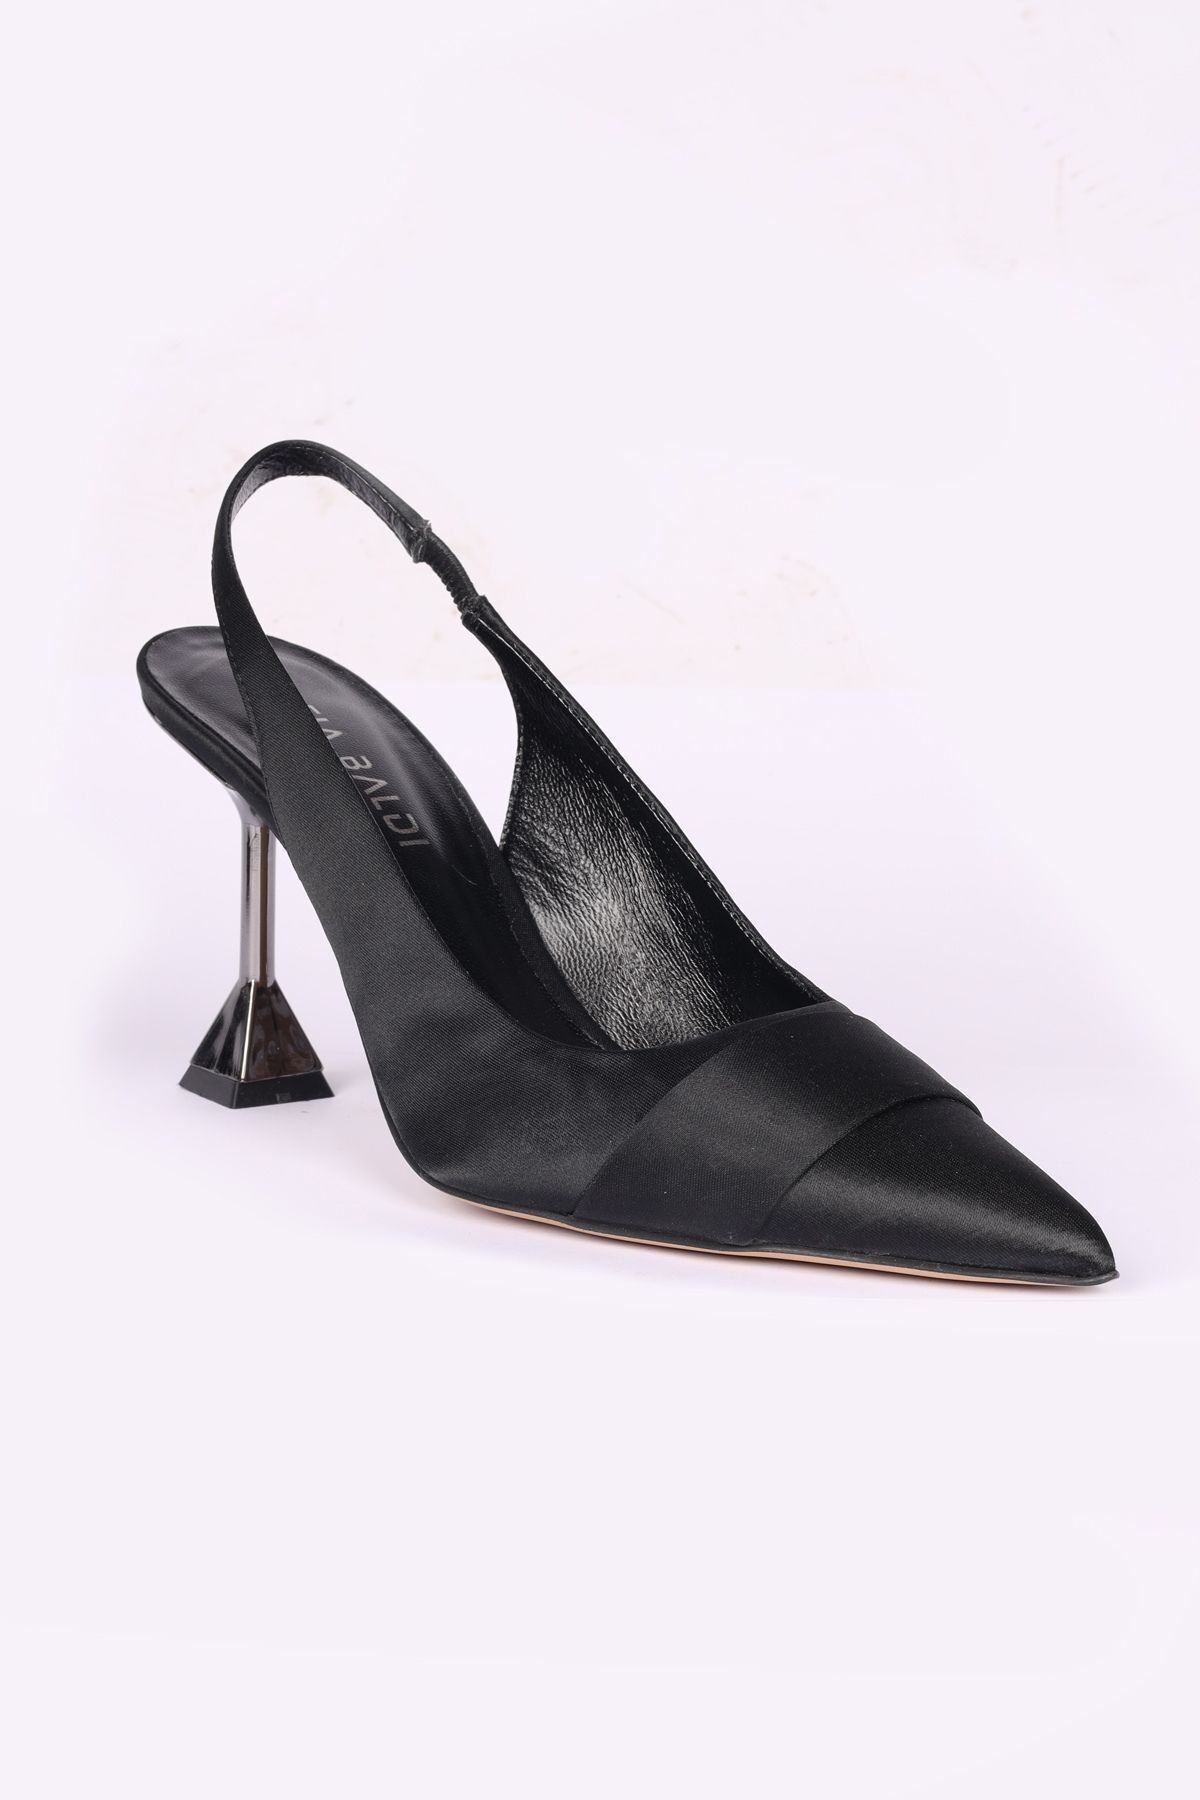 Sofia Baldi Kadın Yüksek Topuk Rahat Düz Model Şık Siyah Abiye Ayakkabı SB48304-SİYAH